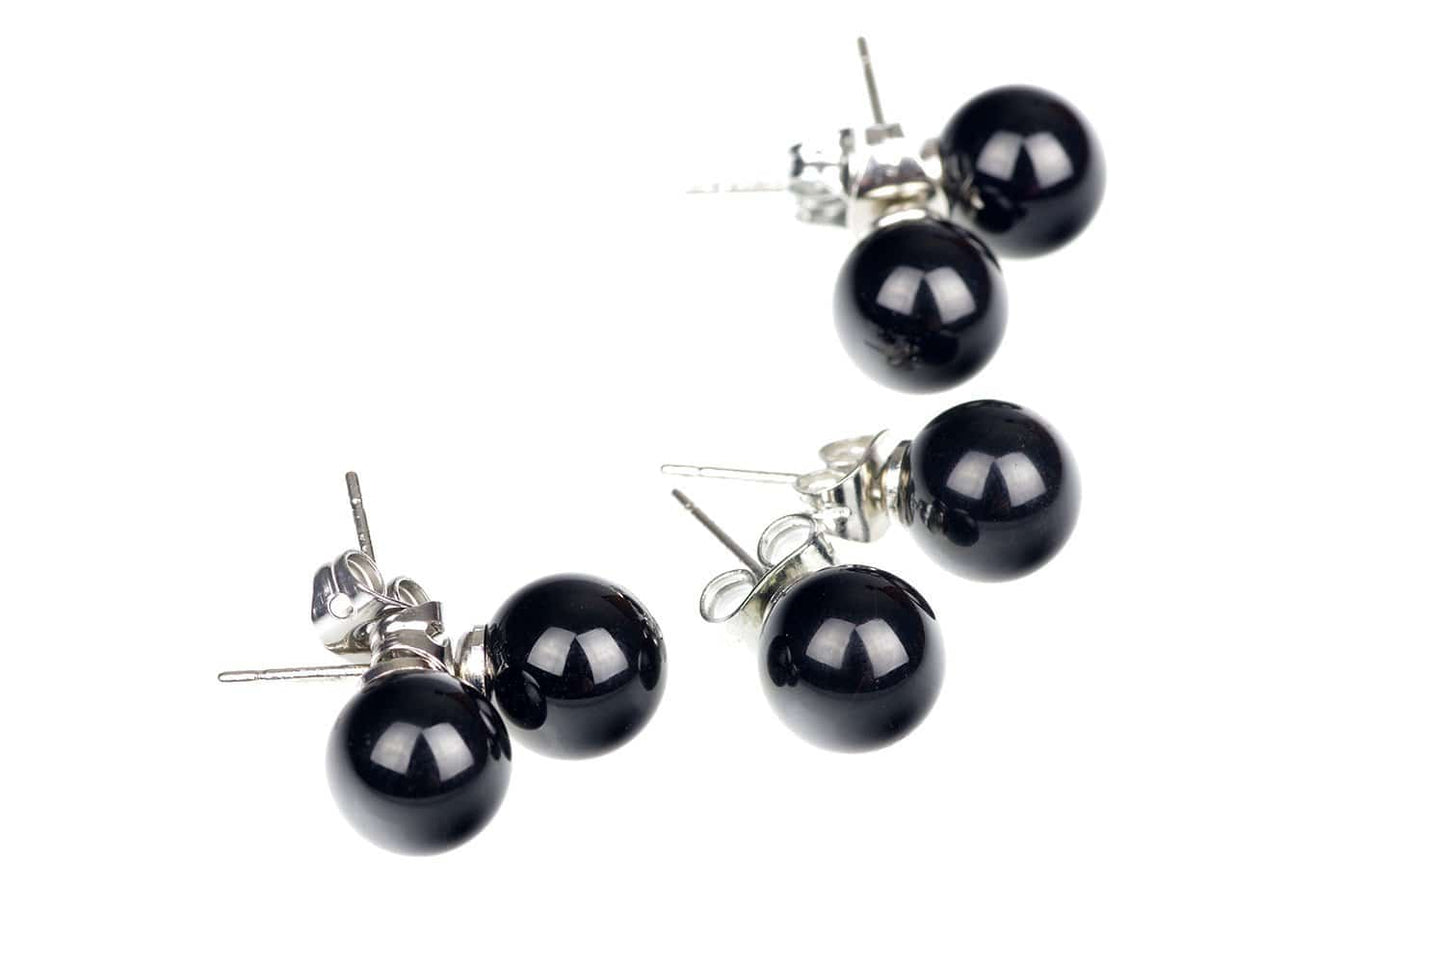 Onyx earrings – 8mm